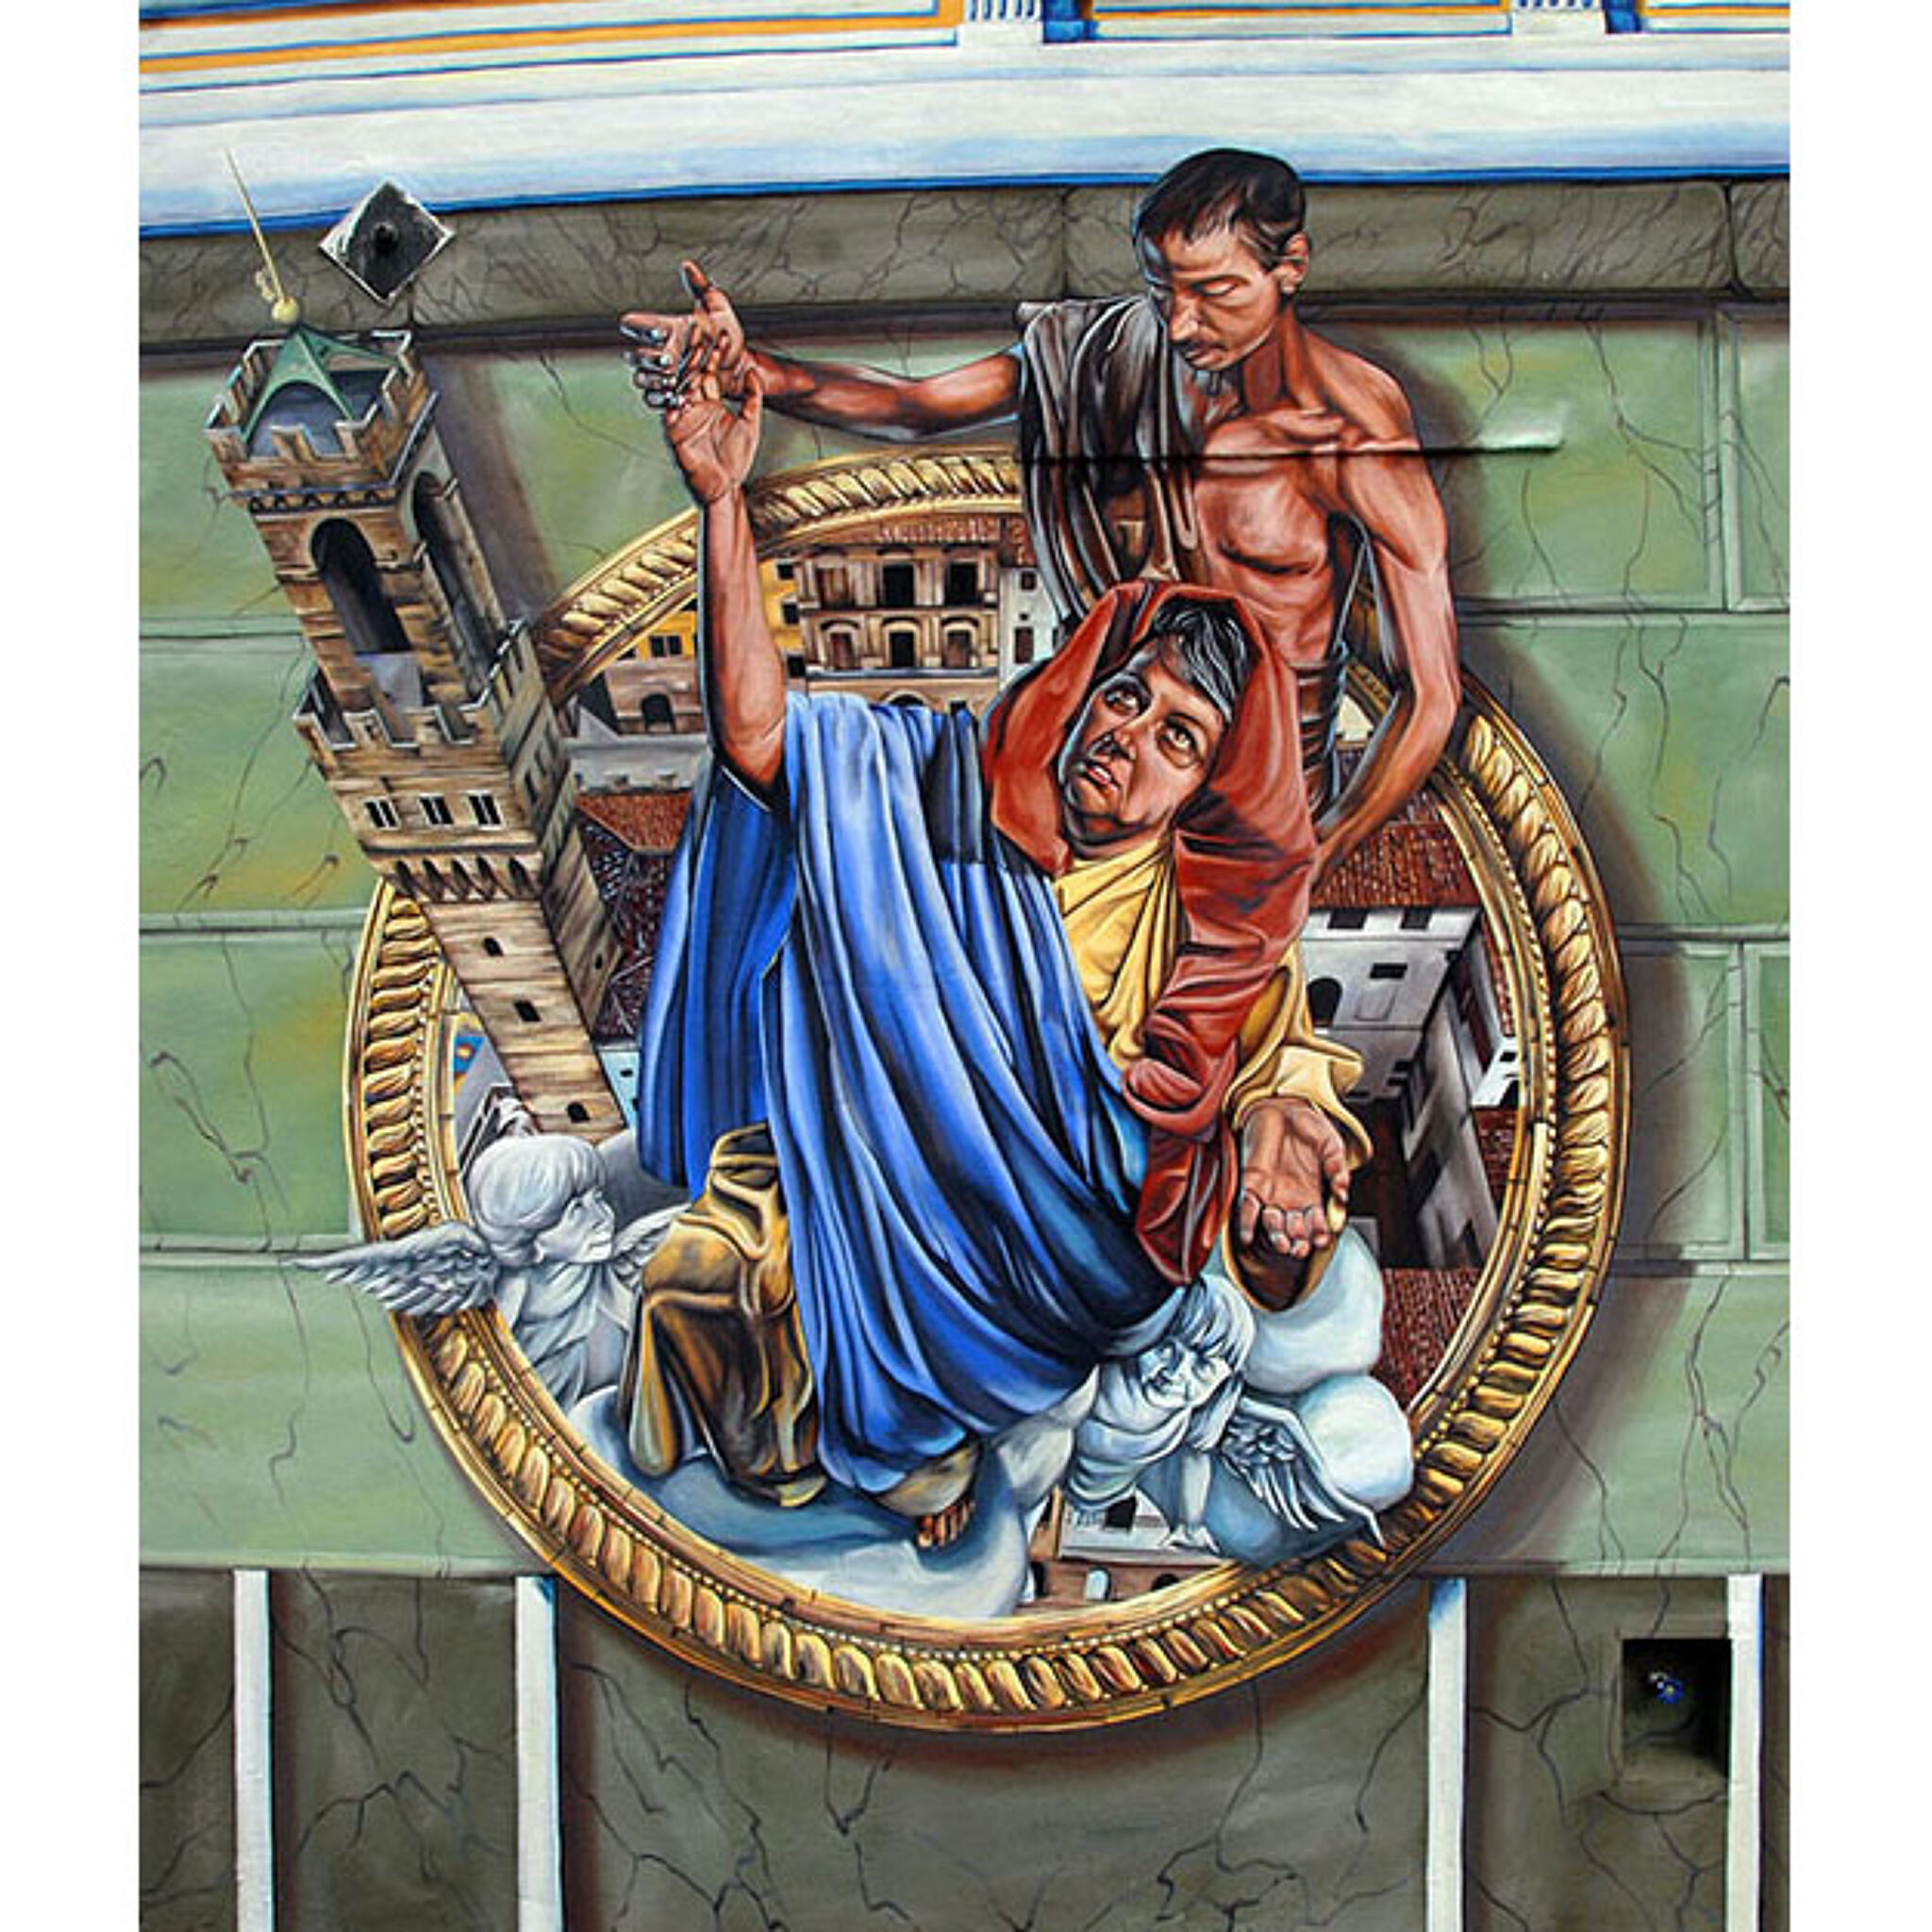 Murals of Baltimore&mdash;Madonnari Mural